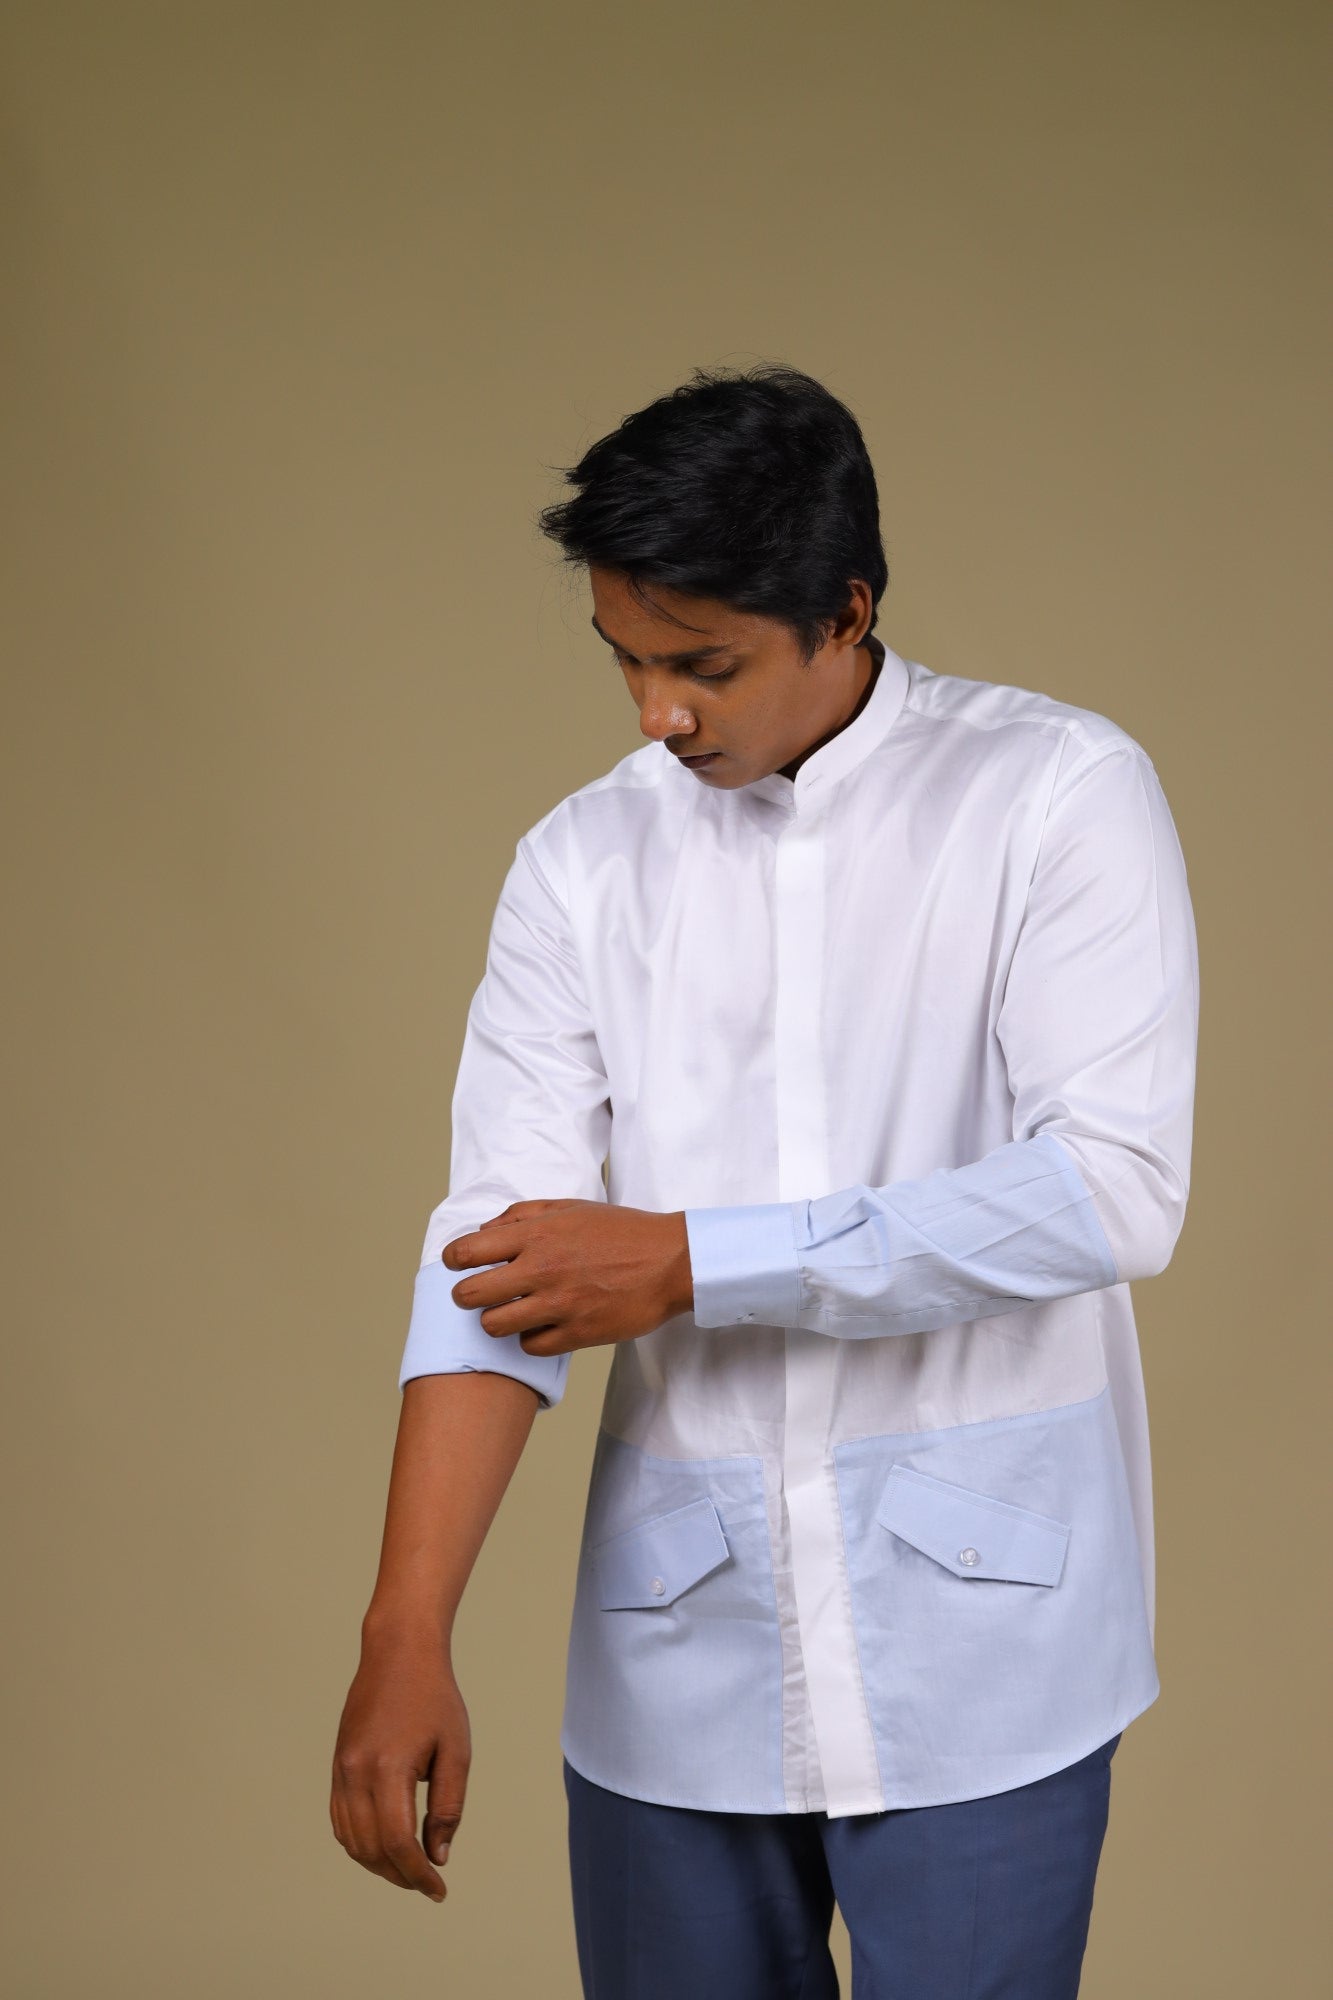 Men's White & Light Blue Color Light Sinum Shirt Full Sleeves Casual Shirt - Hilo Design